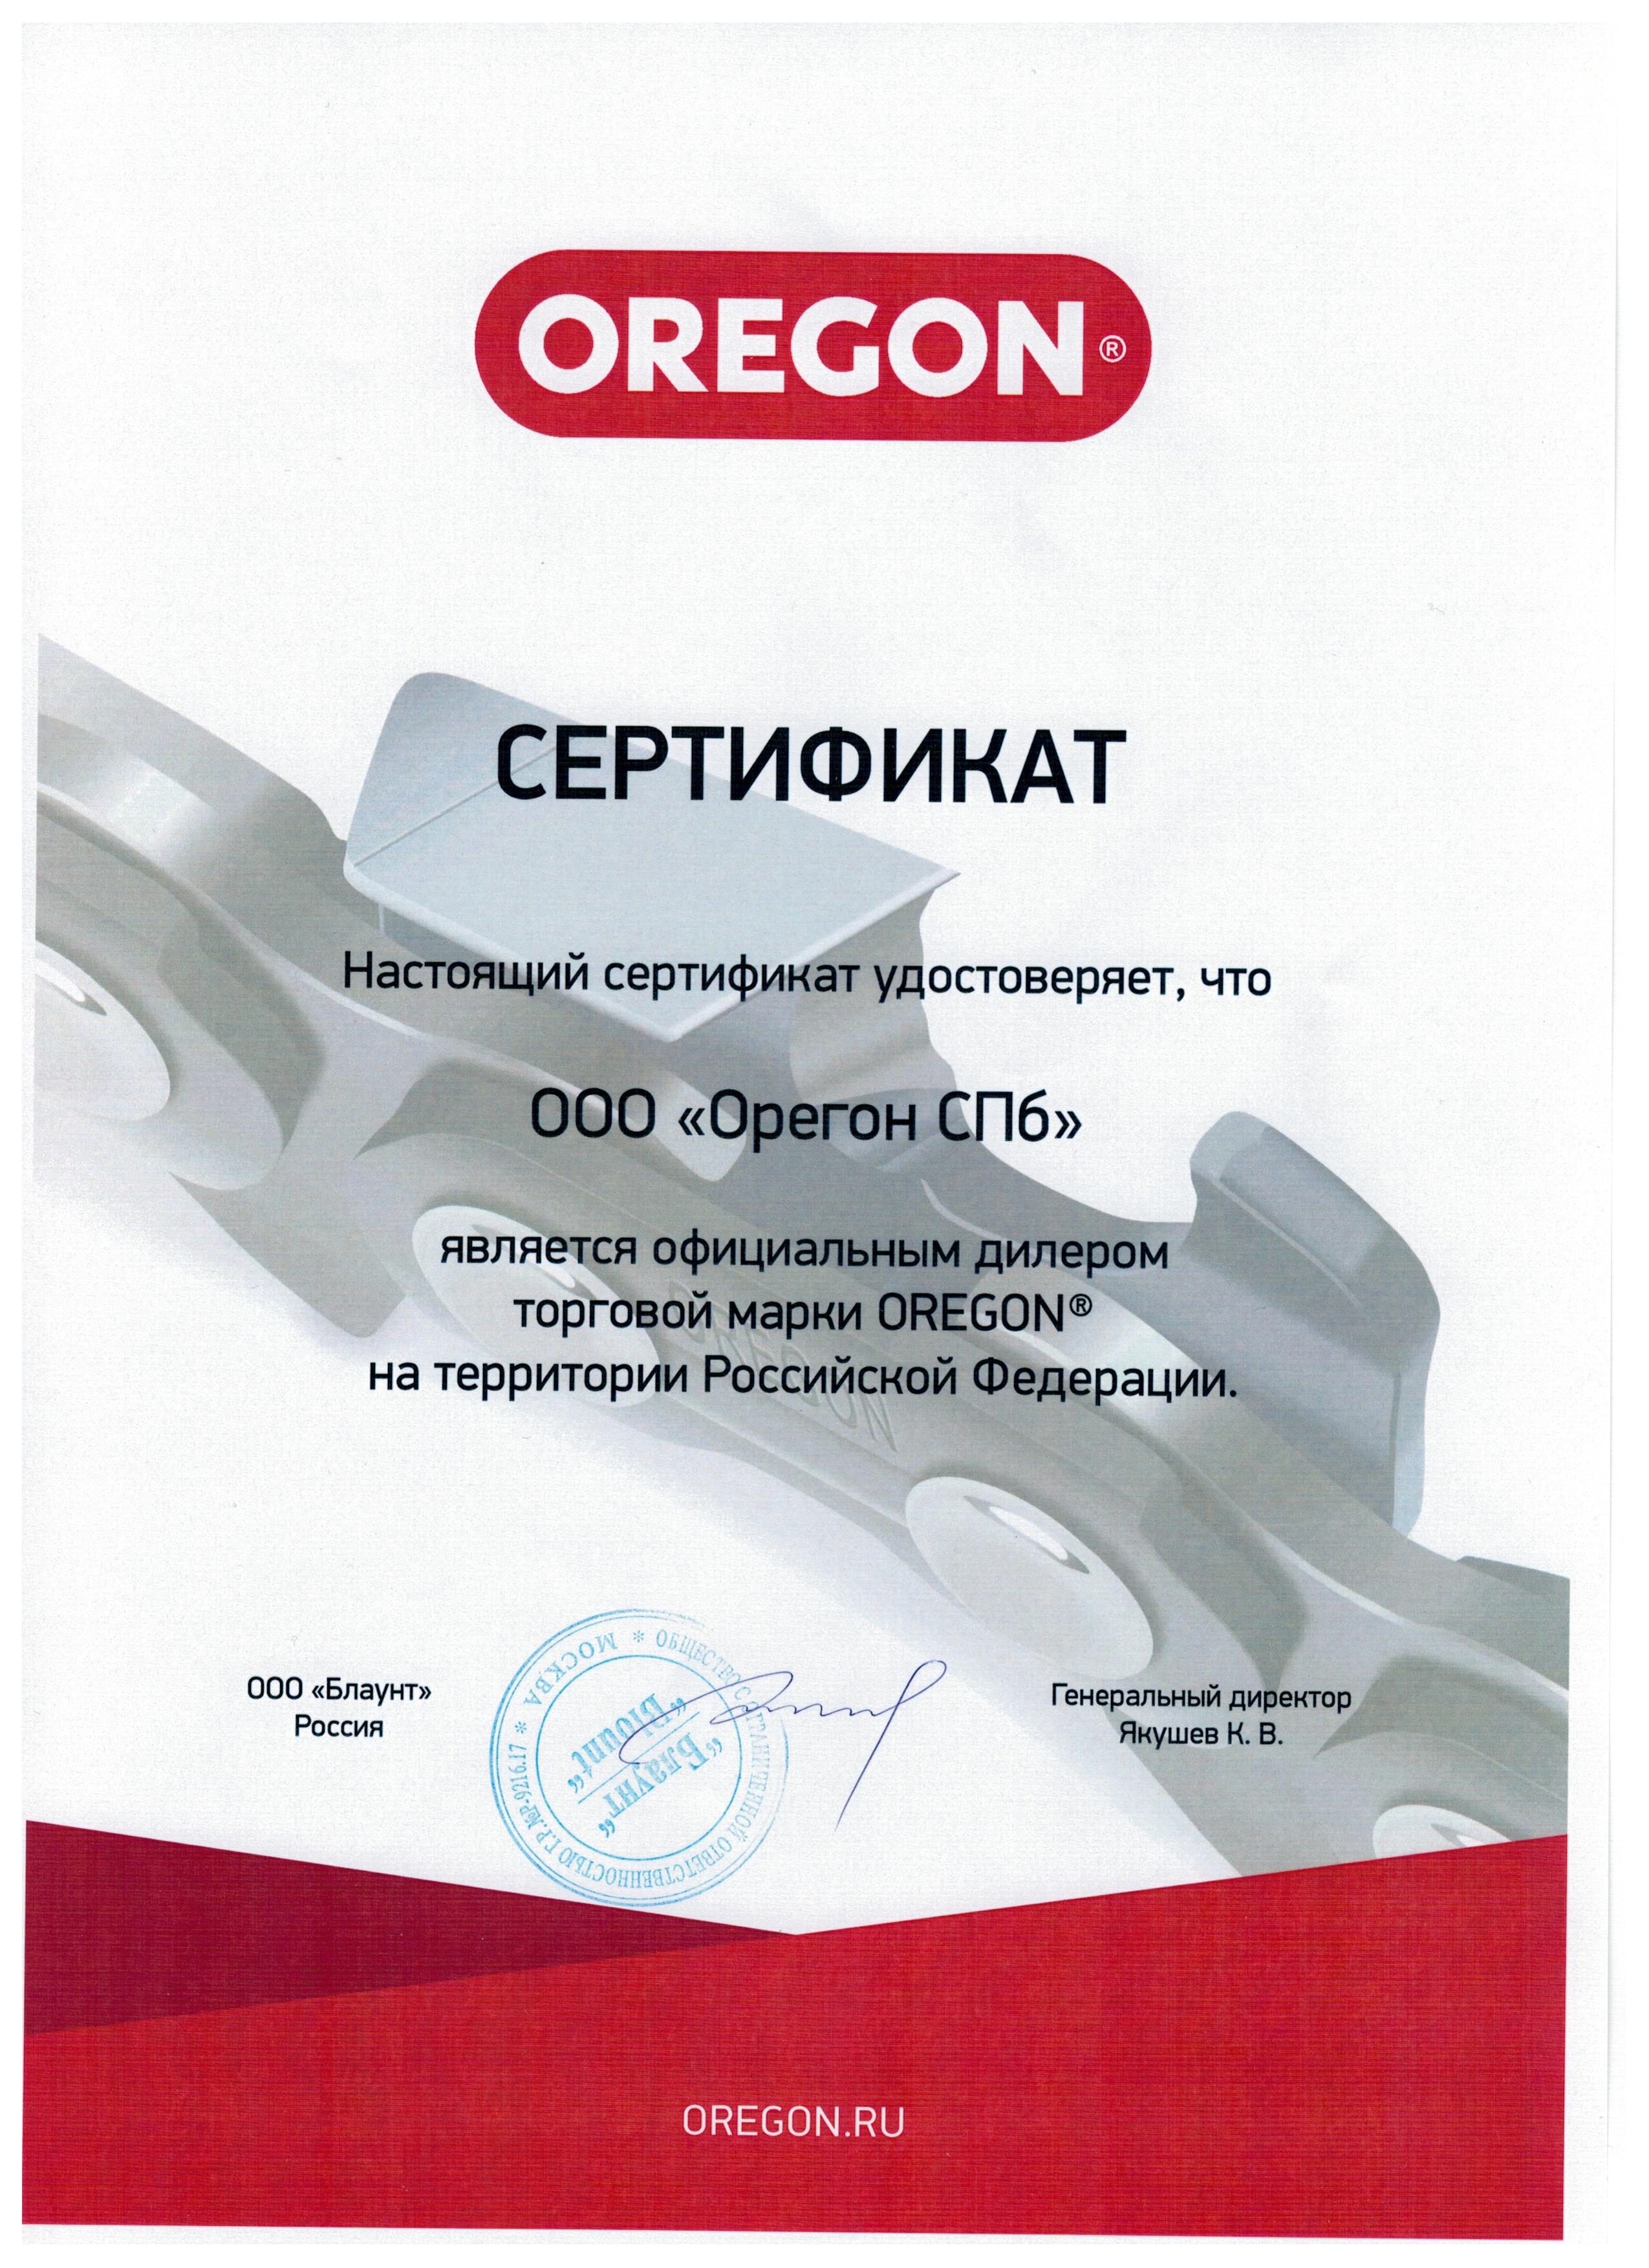 ОрегонПром - Официальный дилер торговой марки "OREGON"